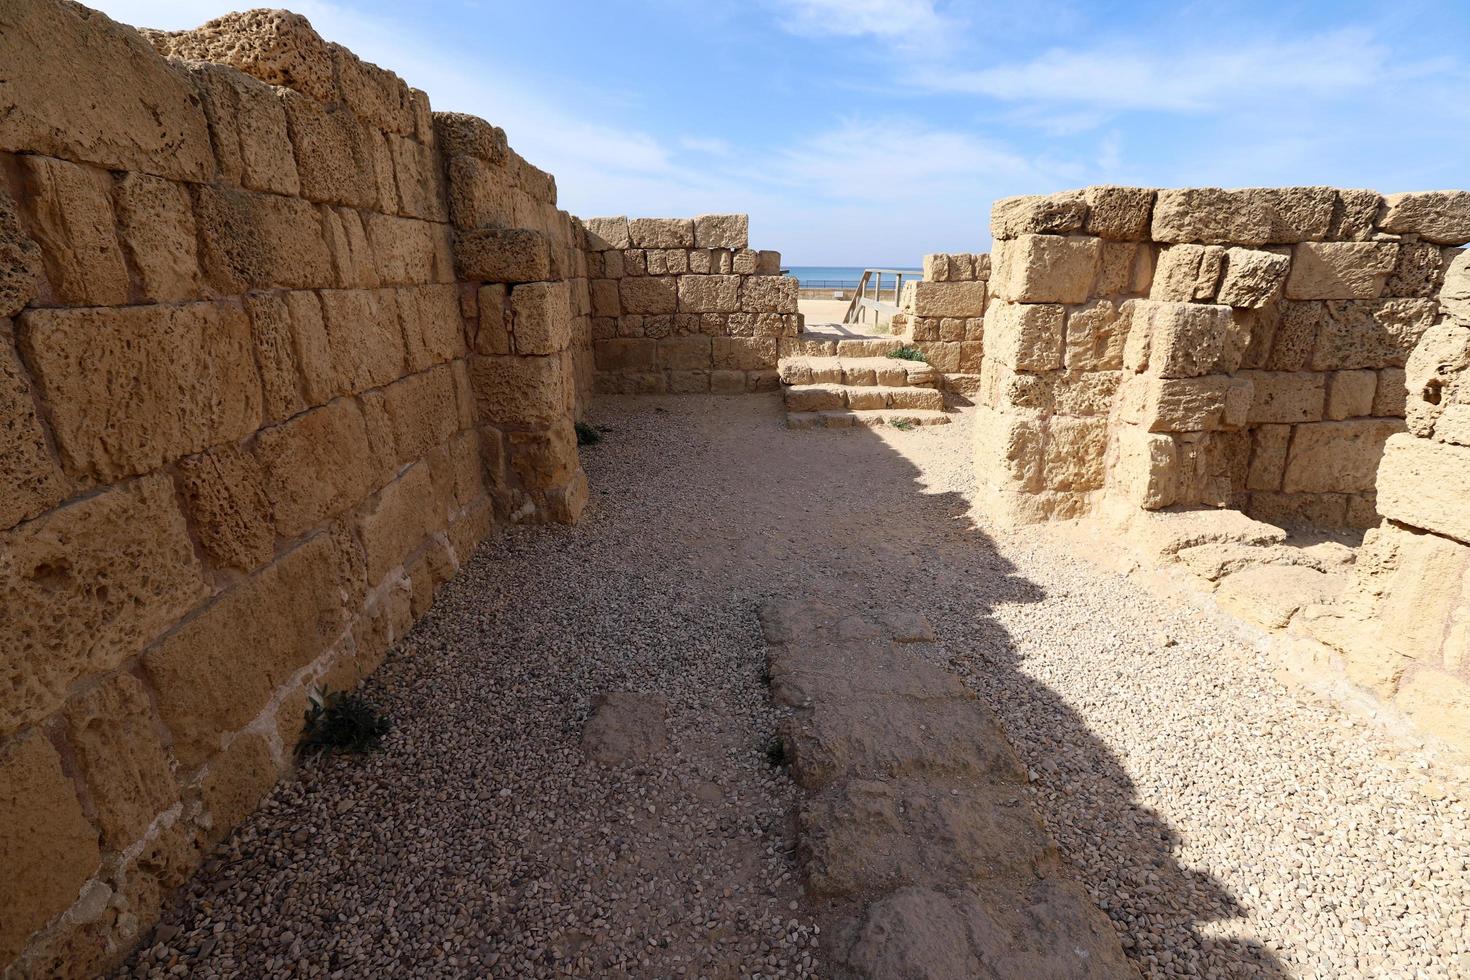 caesarea israel 21 november 2019. ruinerna av en gammal stad vid Medelhavet i israel. foto